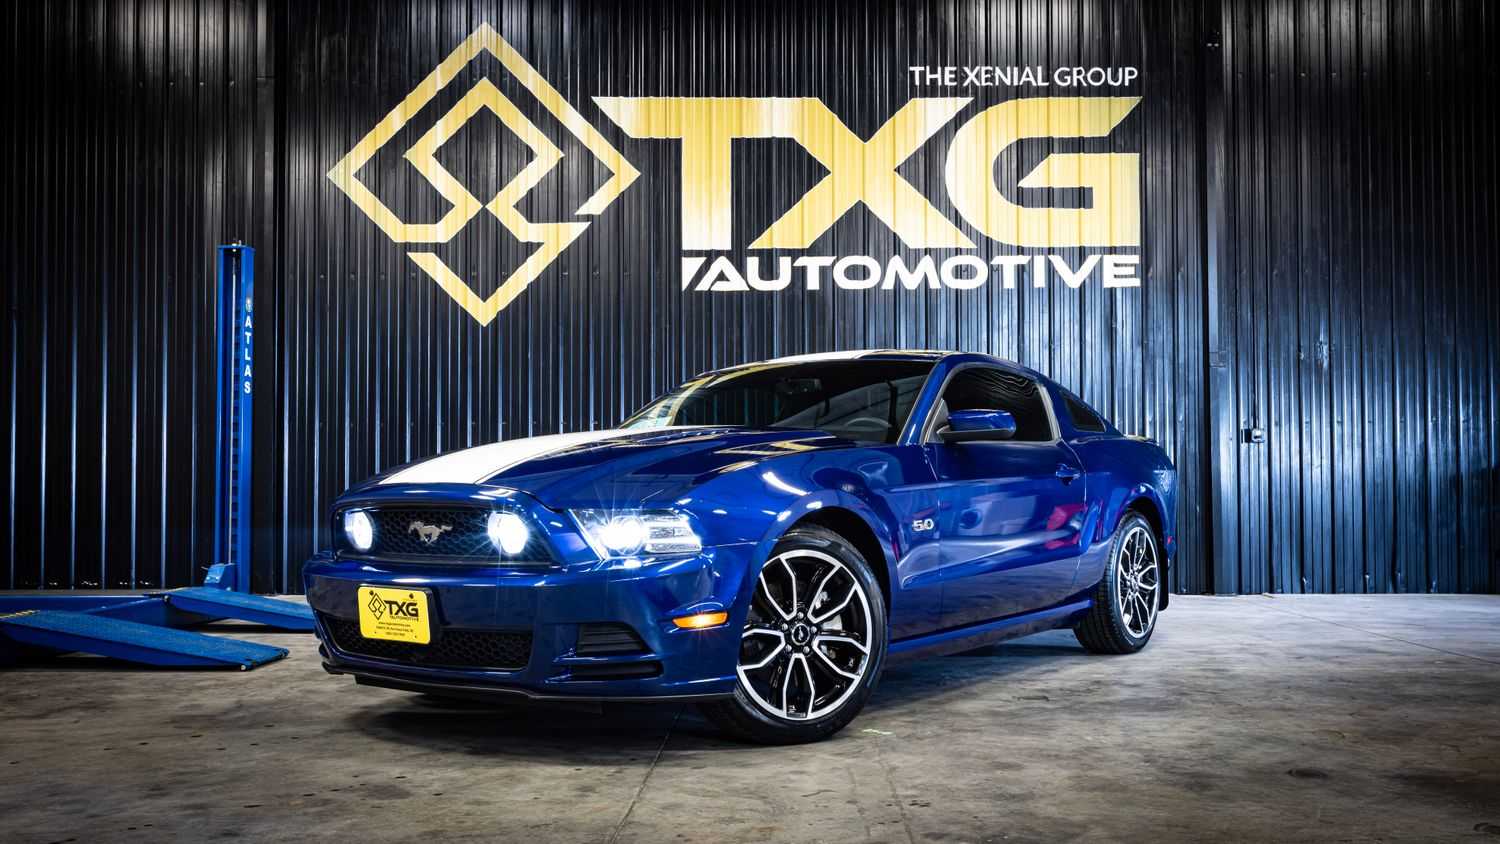 TXG Automotive